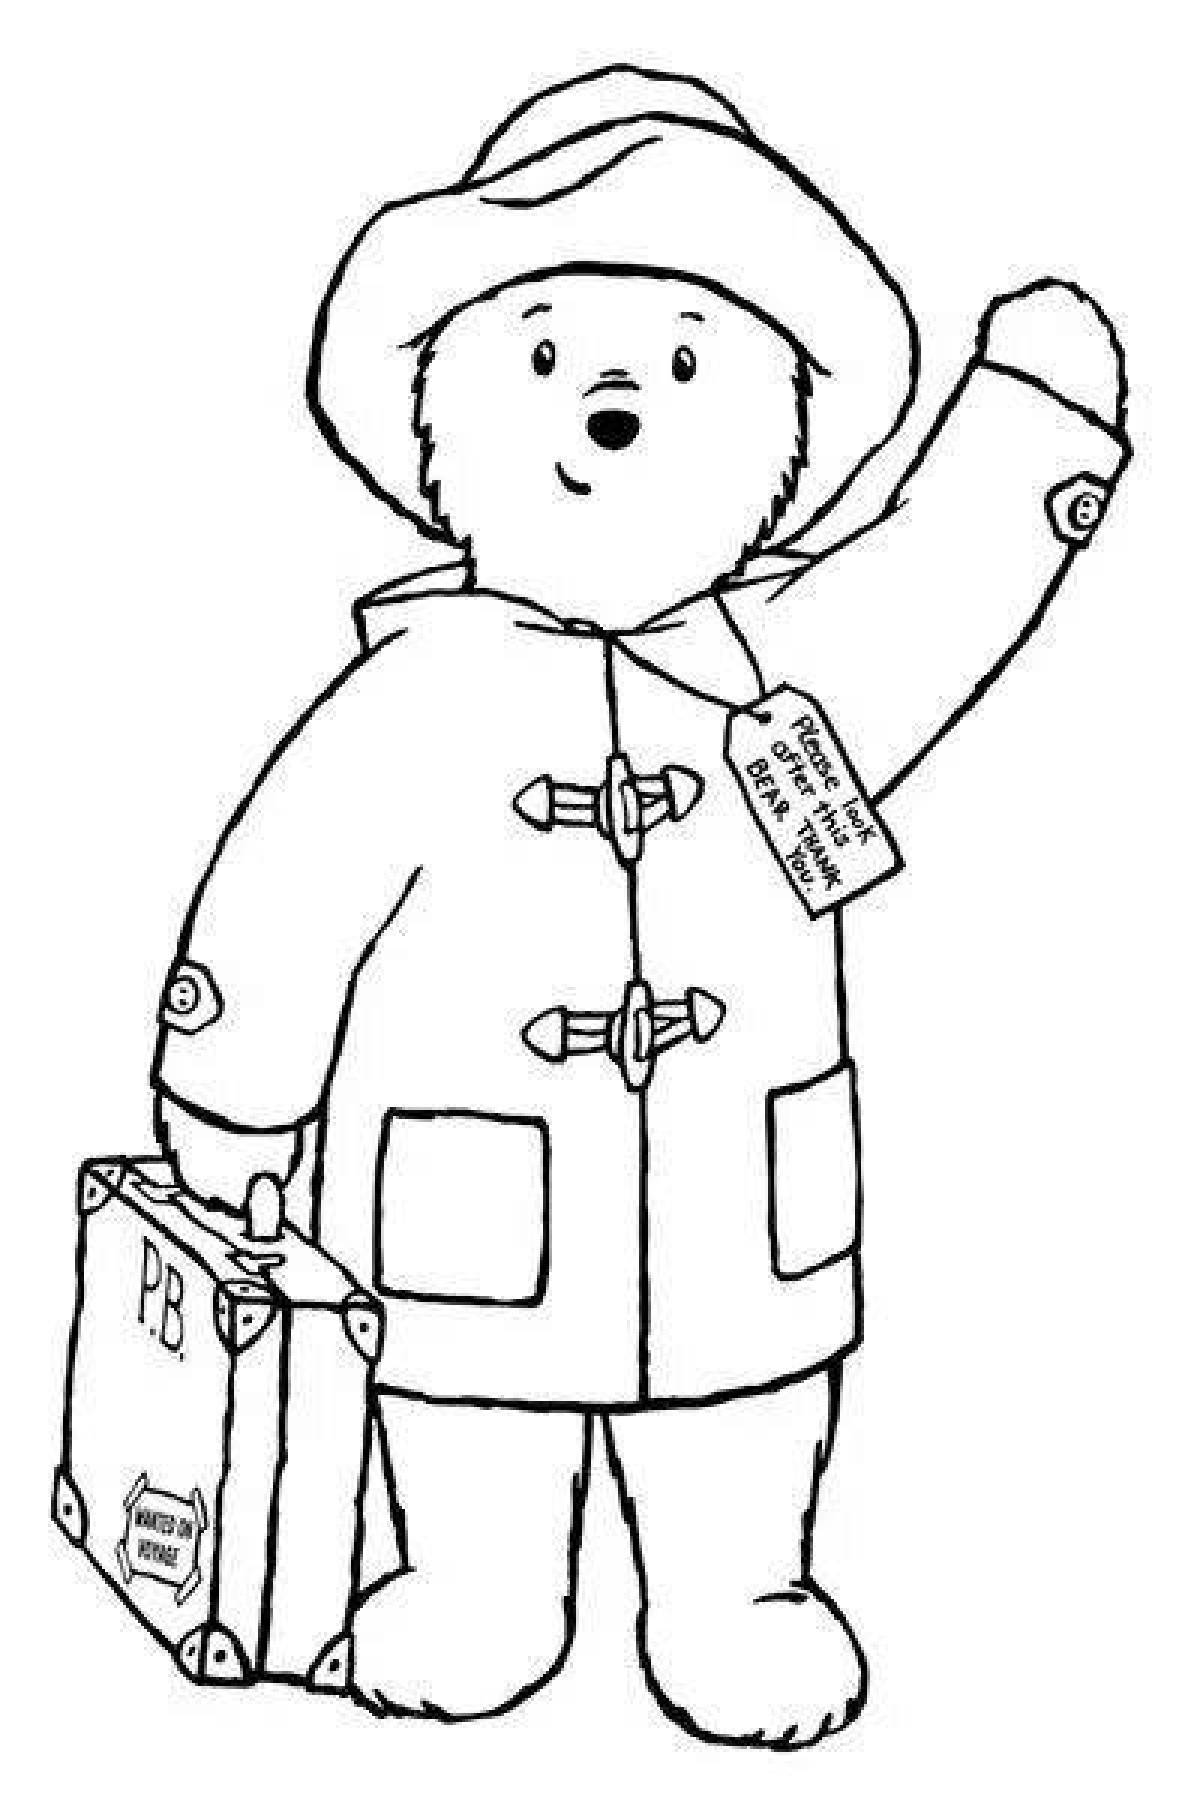 Playful paddington bear coloring book